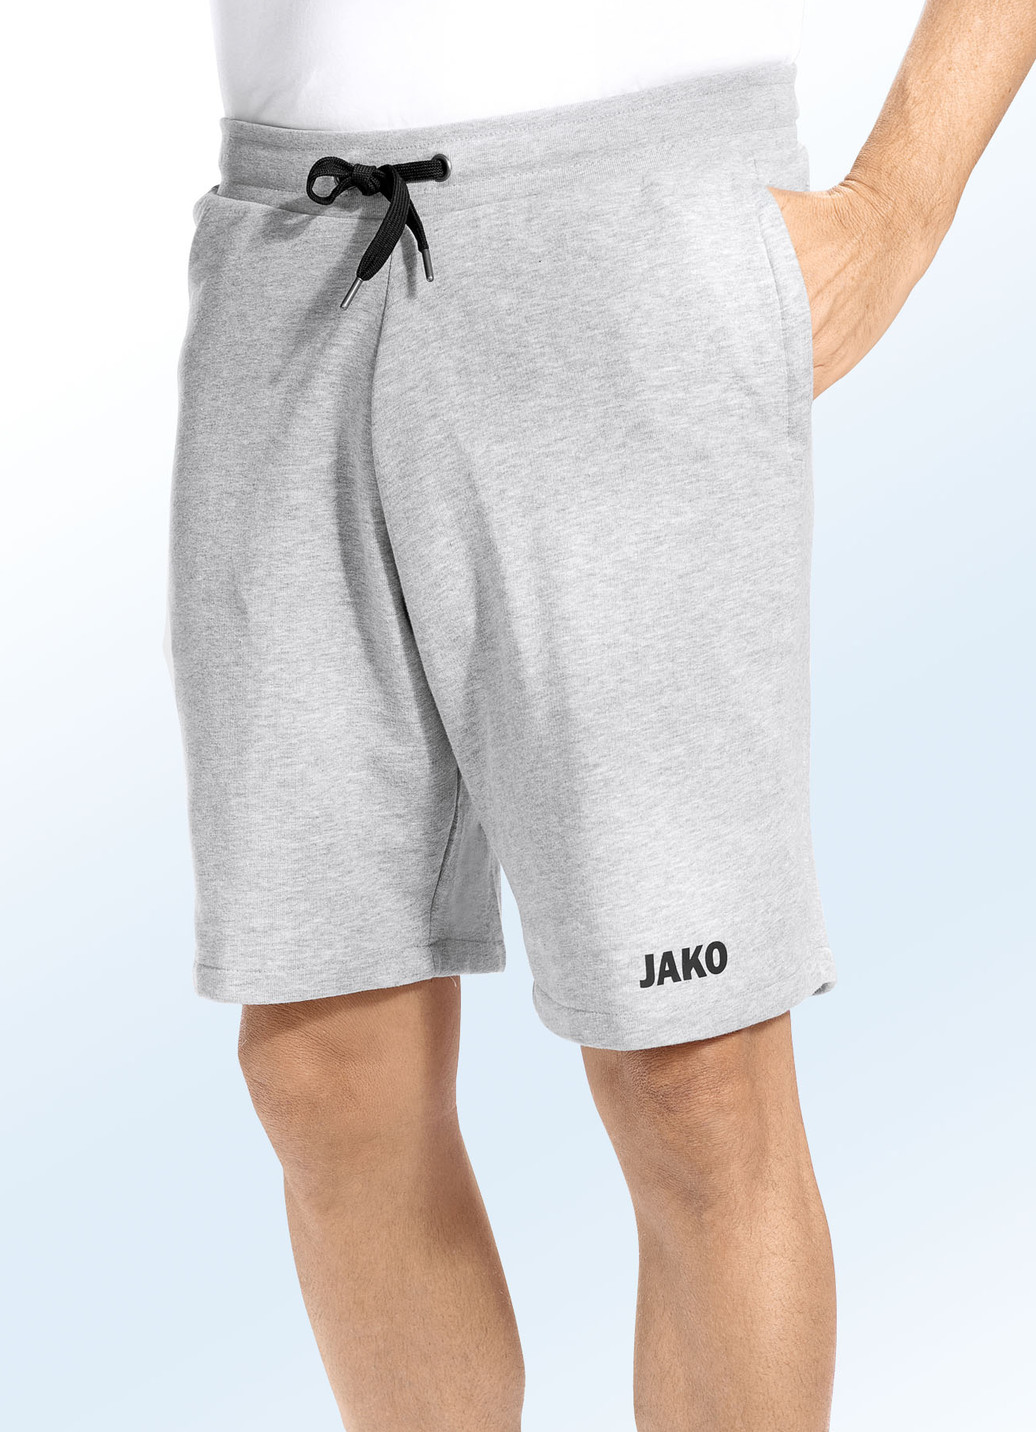 "Jako"-Shorts in 3 Farben, Hellgrau Meliert, Größe S (44) von Jako